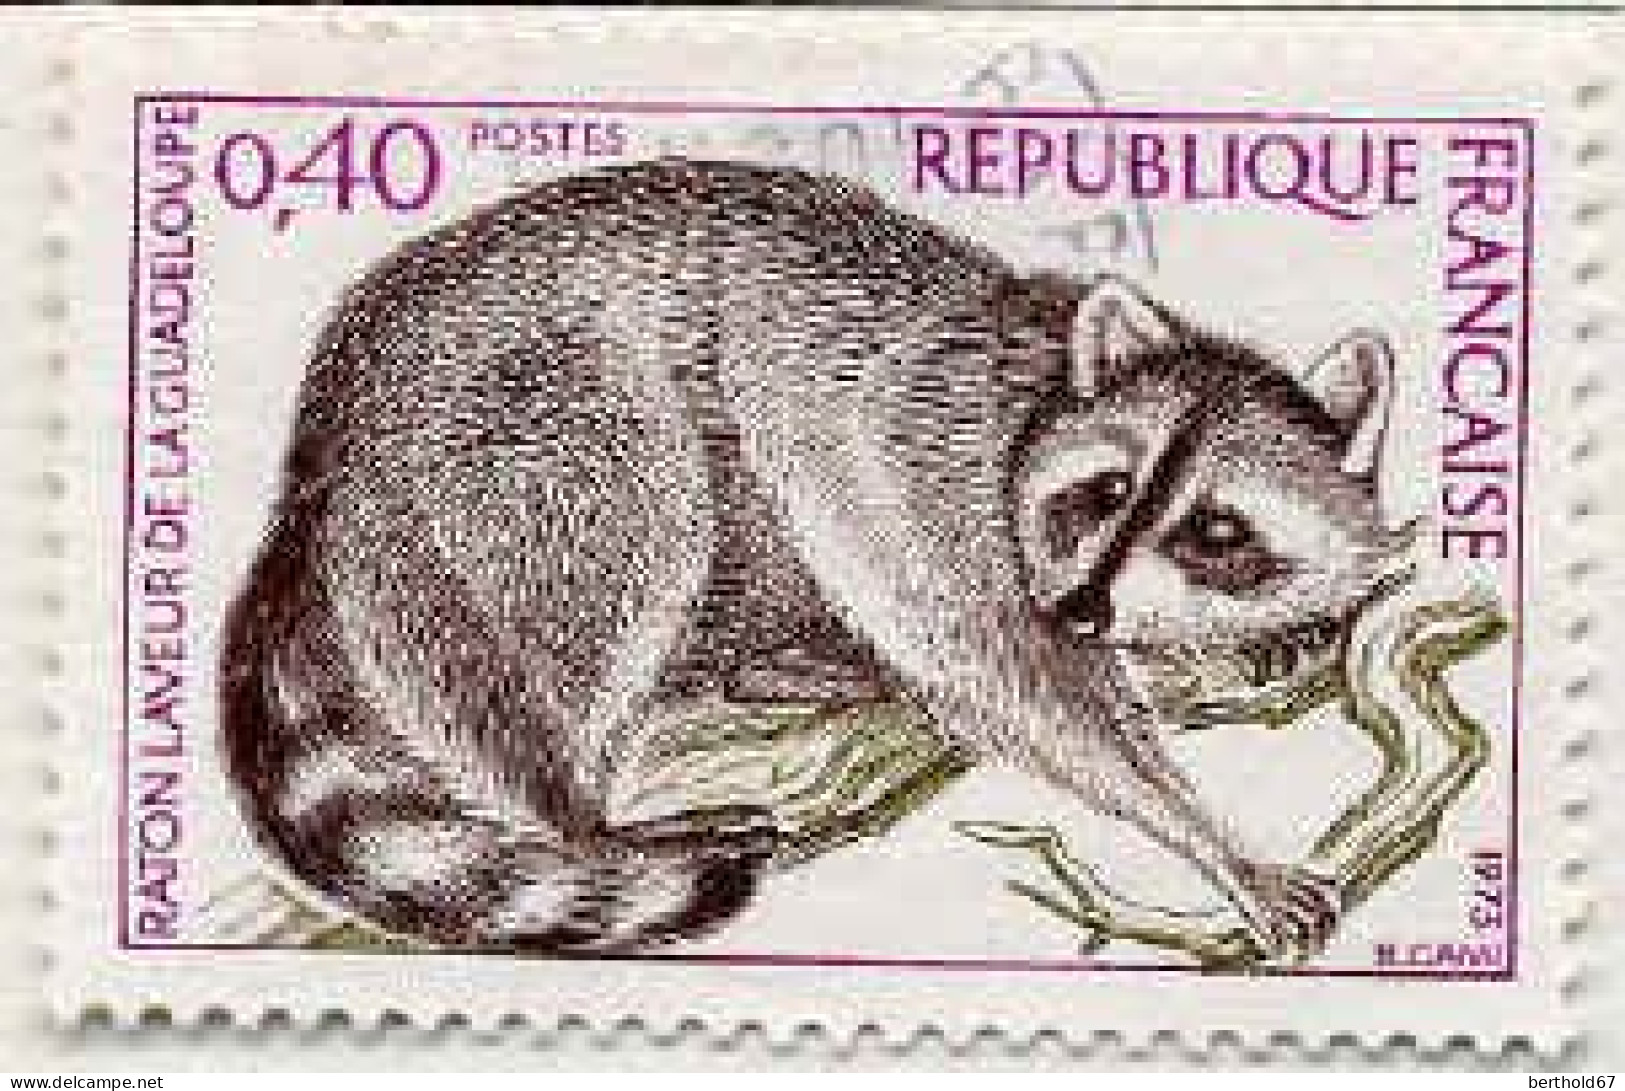 France Poste Obl Yv:1754 Mi:1843 Raton Laveur De La Guadeloupe (cachet Rond) - Used Stamps